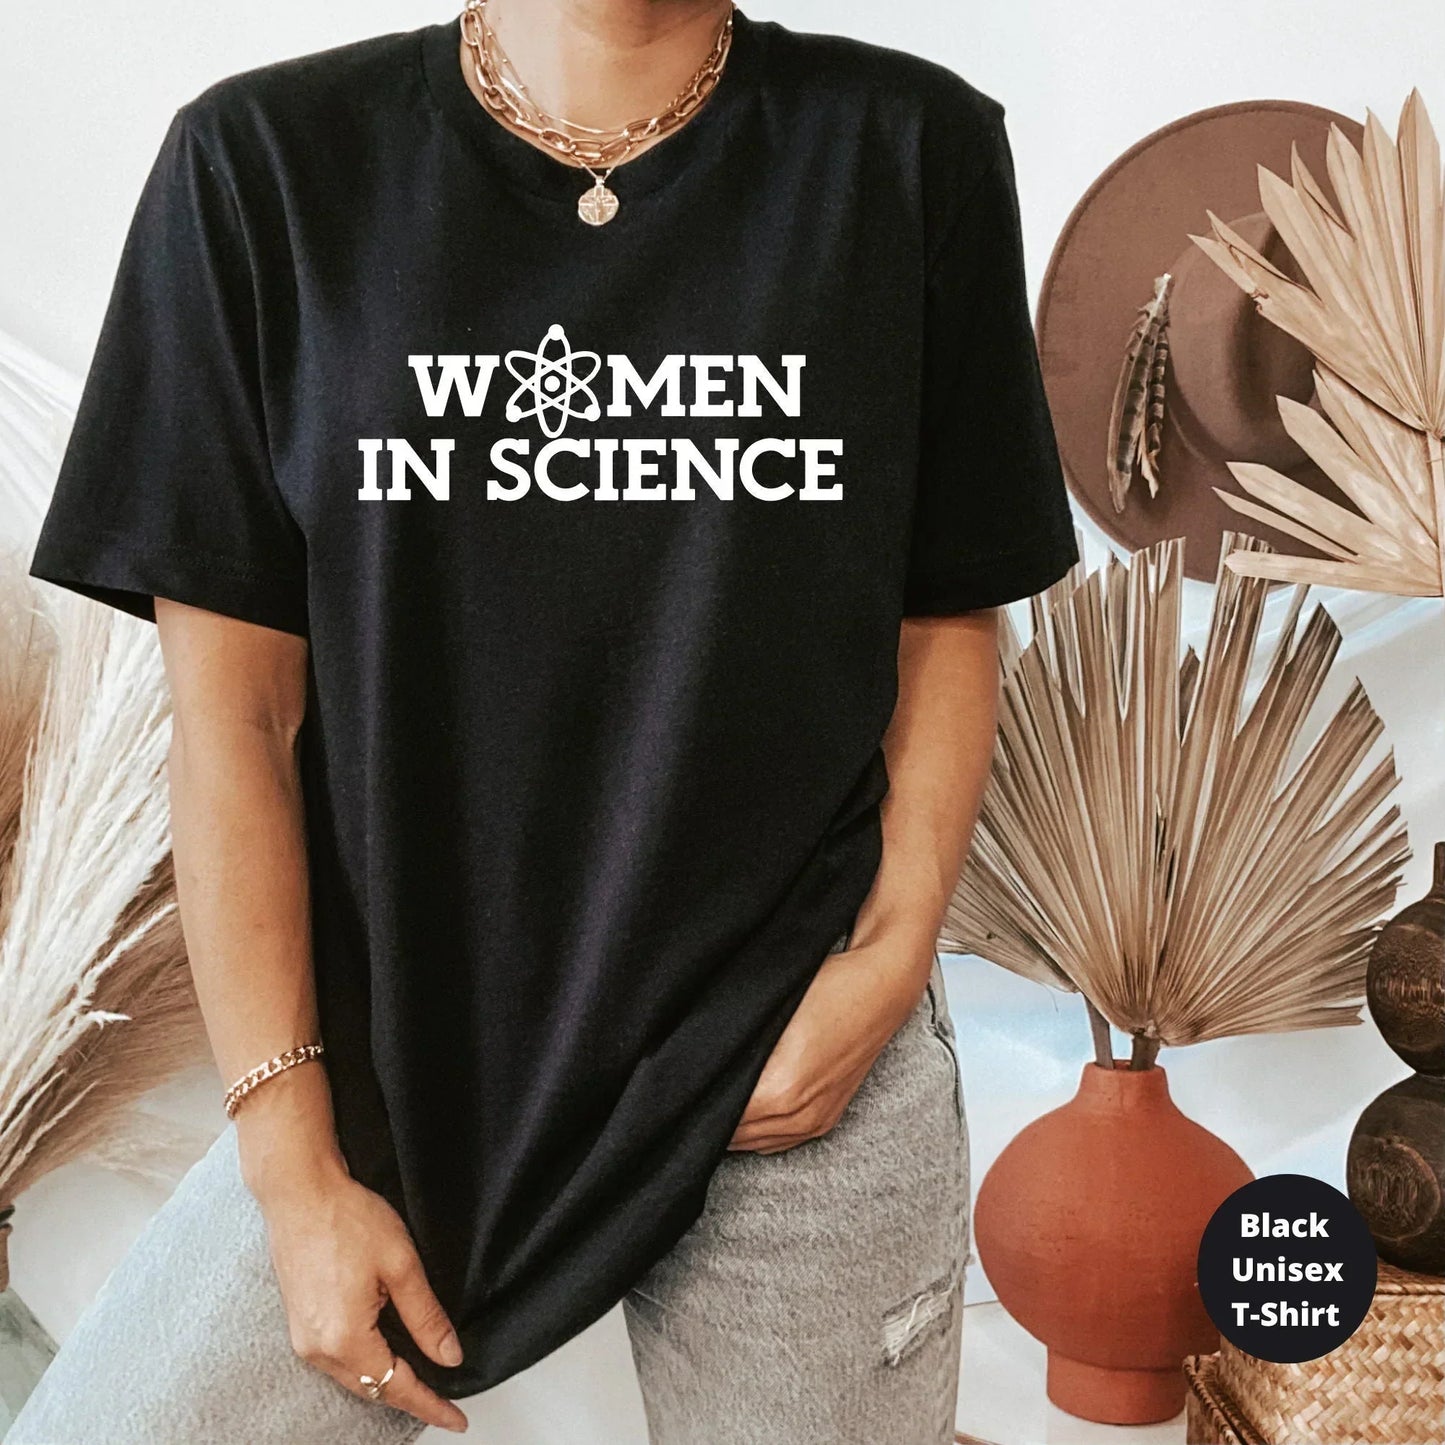 Science Teacher Shirt, Women In Science, Teacher Sweatshirt, Gift for Teacher Elements Teacher Shirt, Funny Chemistry Teacher Shirt HMDesignStudioUS